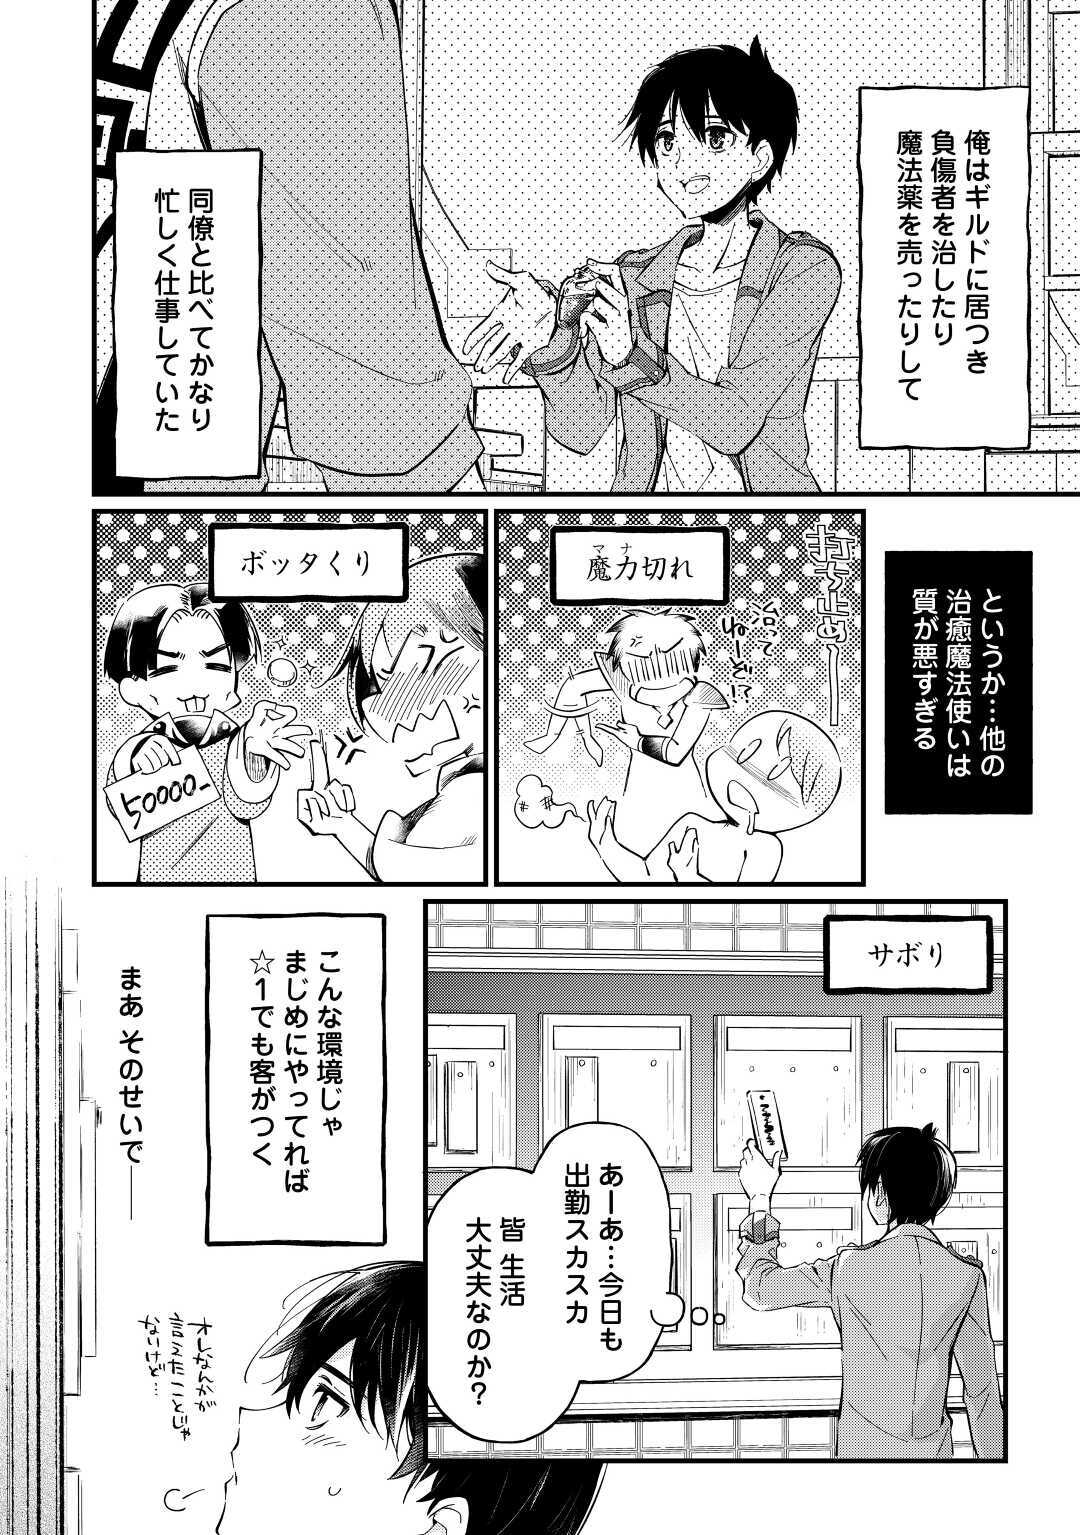 Ochikobore 1 Mahou Tsukai wa, Kyou mo Muishiki ni Cheat o Tsukau - Chapter 3 - Page 2